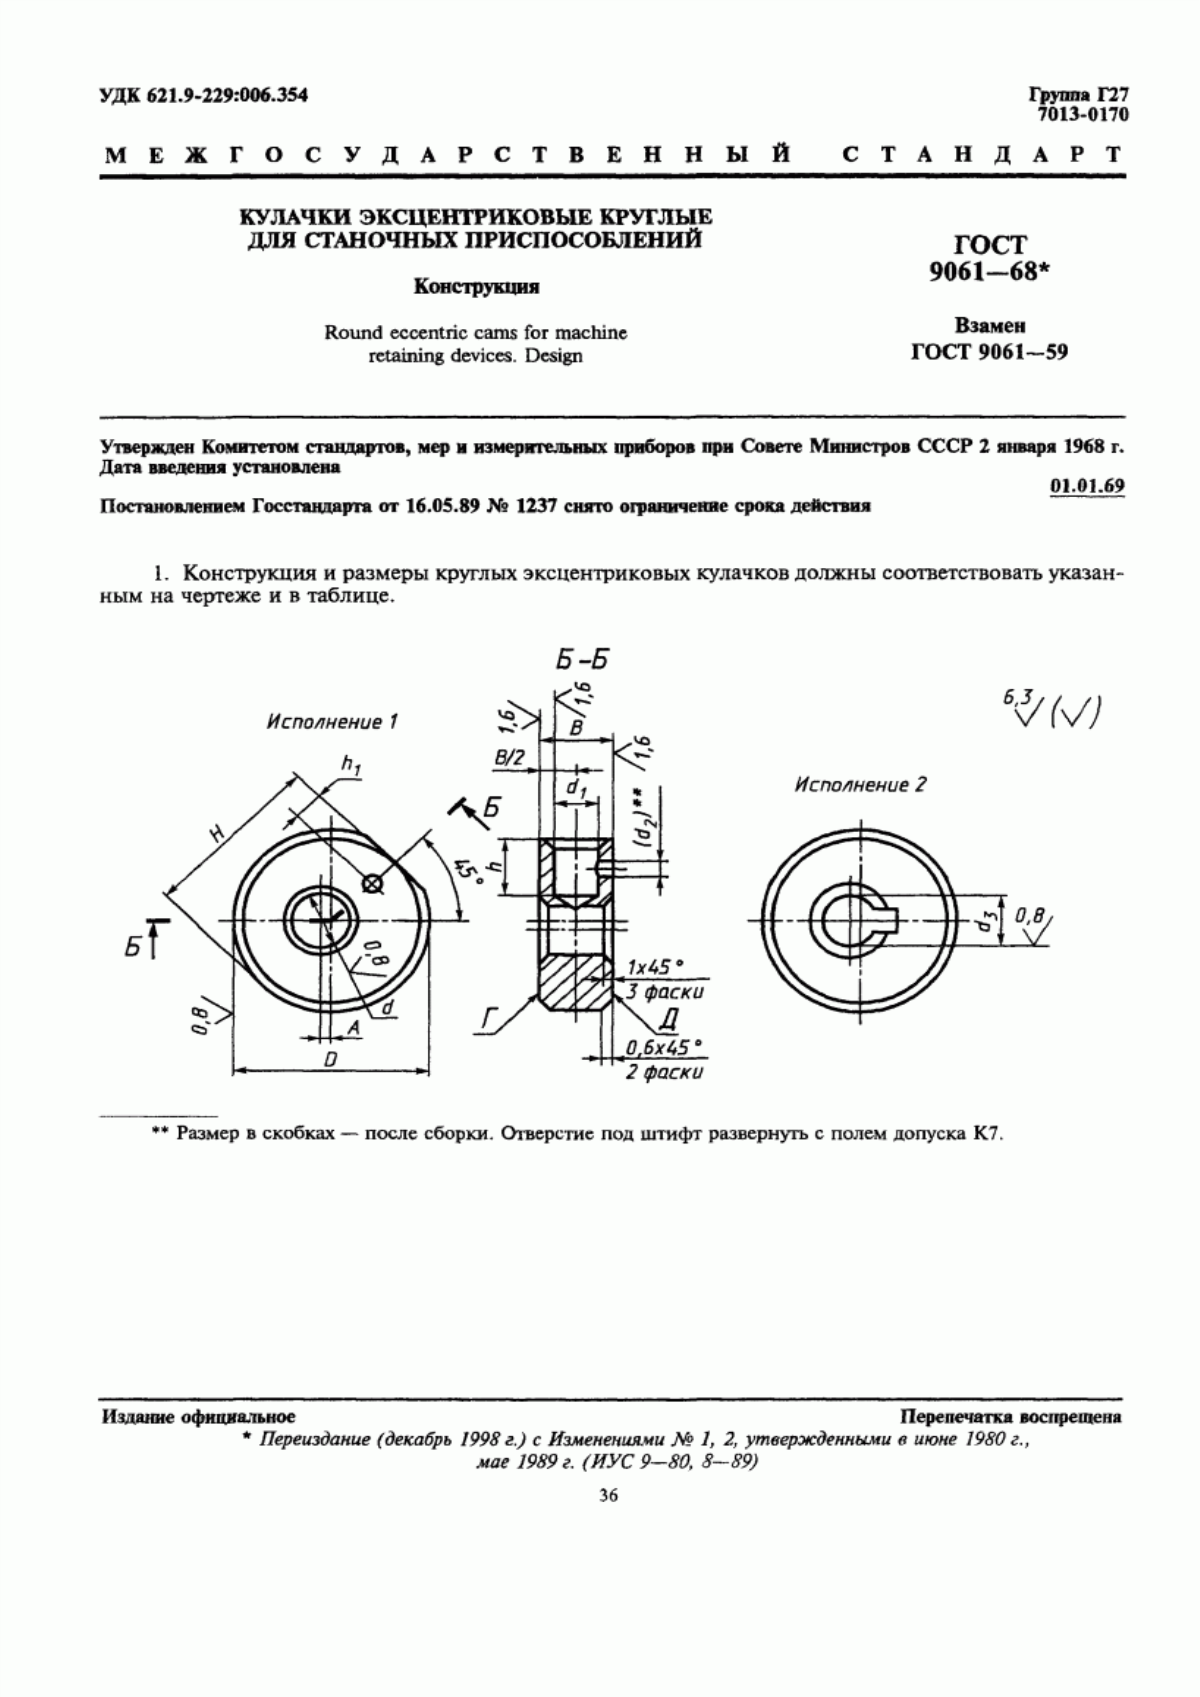 ГОСТ 9061-68 Кулачки эксцентриковые круглые для станочных приспособлений. Конструкция